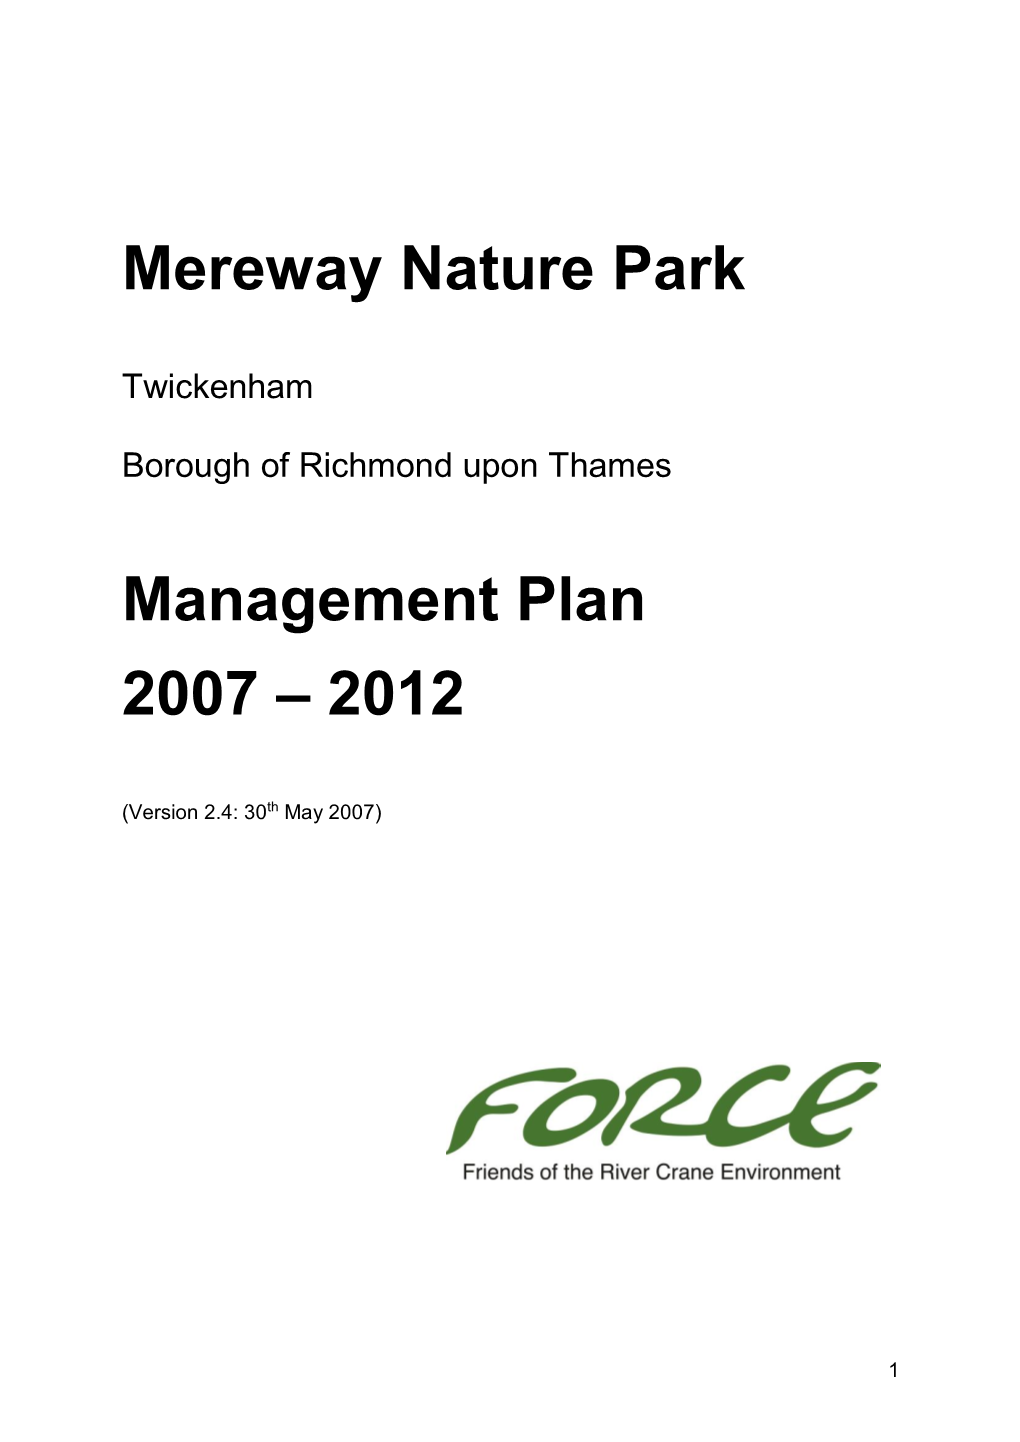 Mereway Nature Park Management Plan